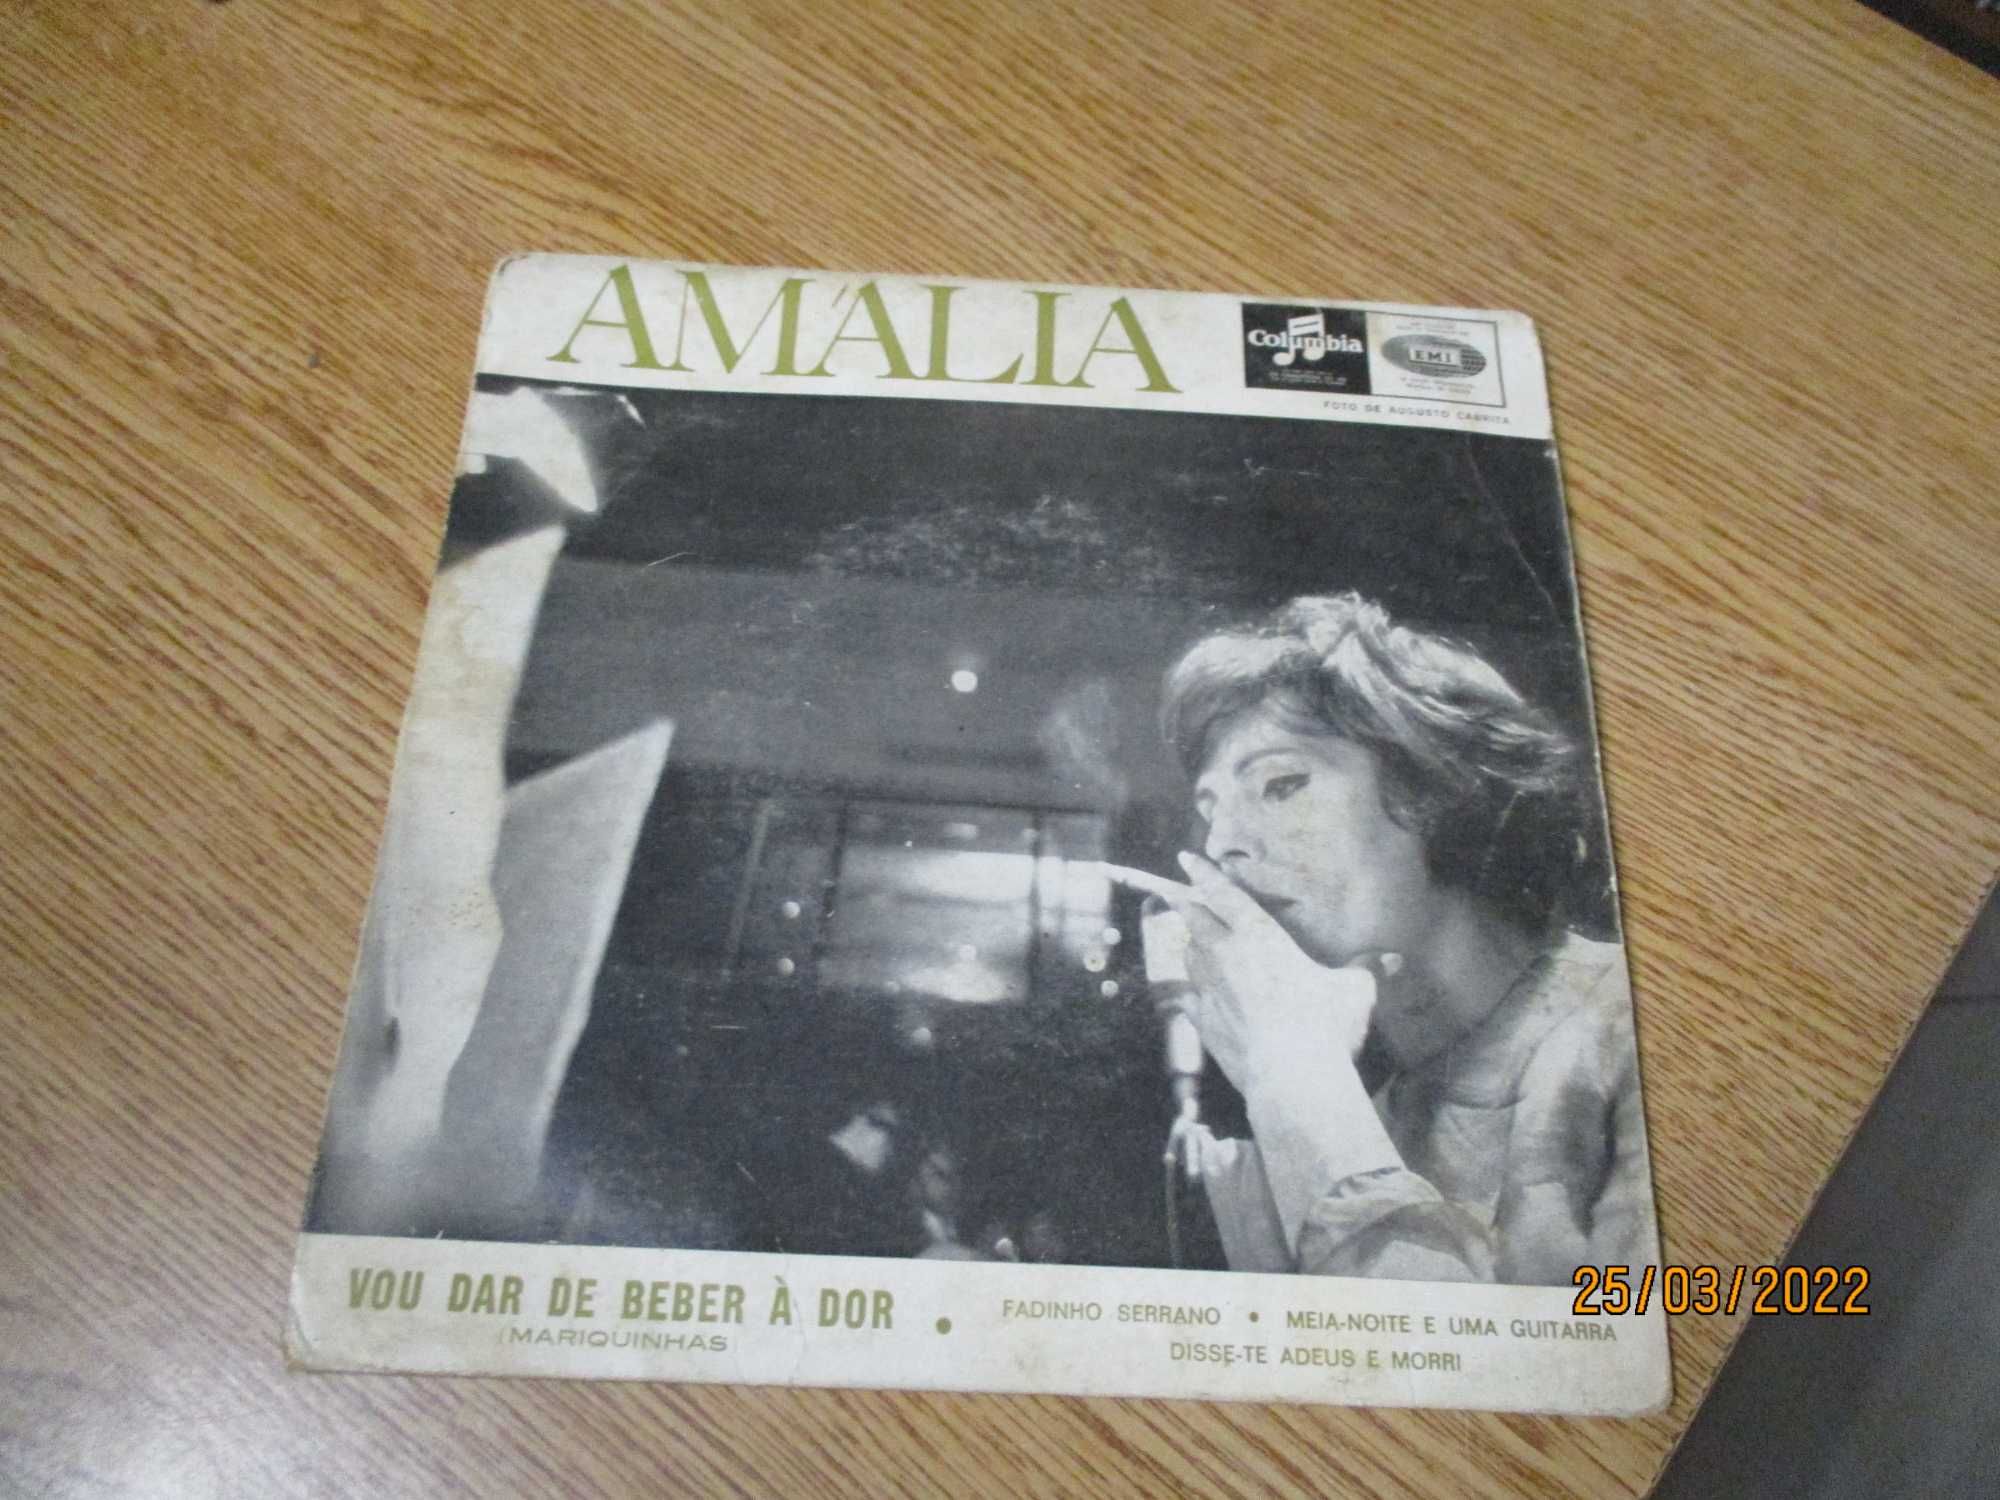 Discos vários vinil EP Fado Amália Rodrigues